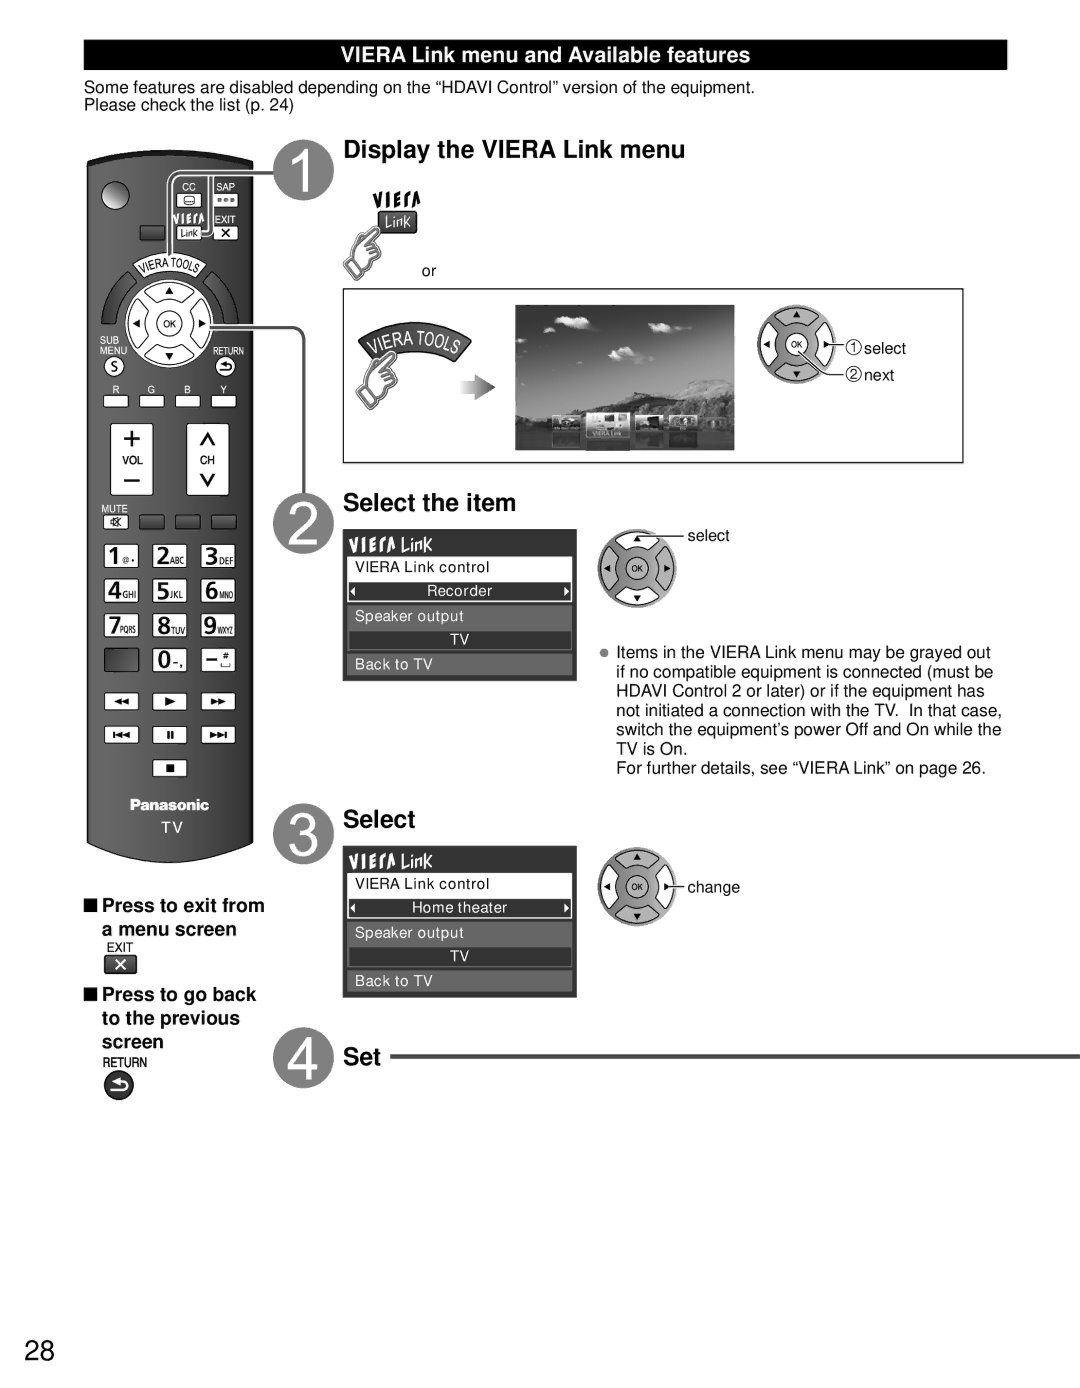 Panasonic TC-P4632C, TC-P4232C, TC-P5032C Display the Viera Link menu, Select, Set, Viera Link menu and Available features 